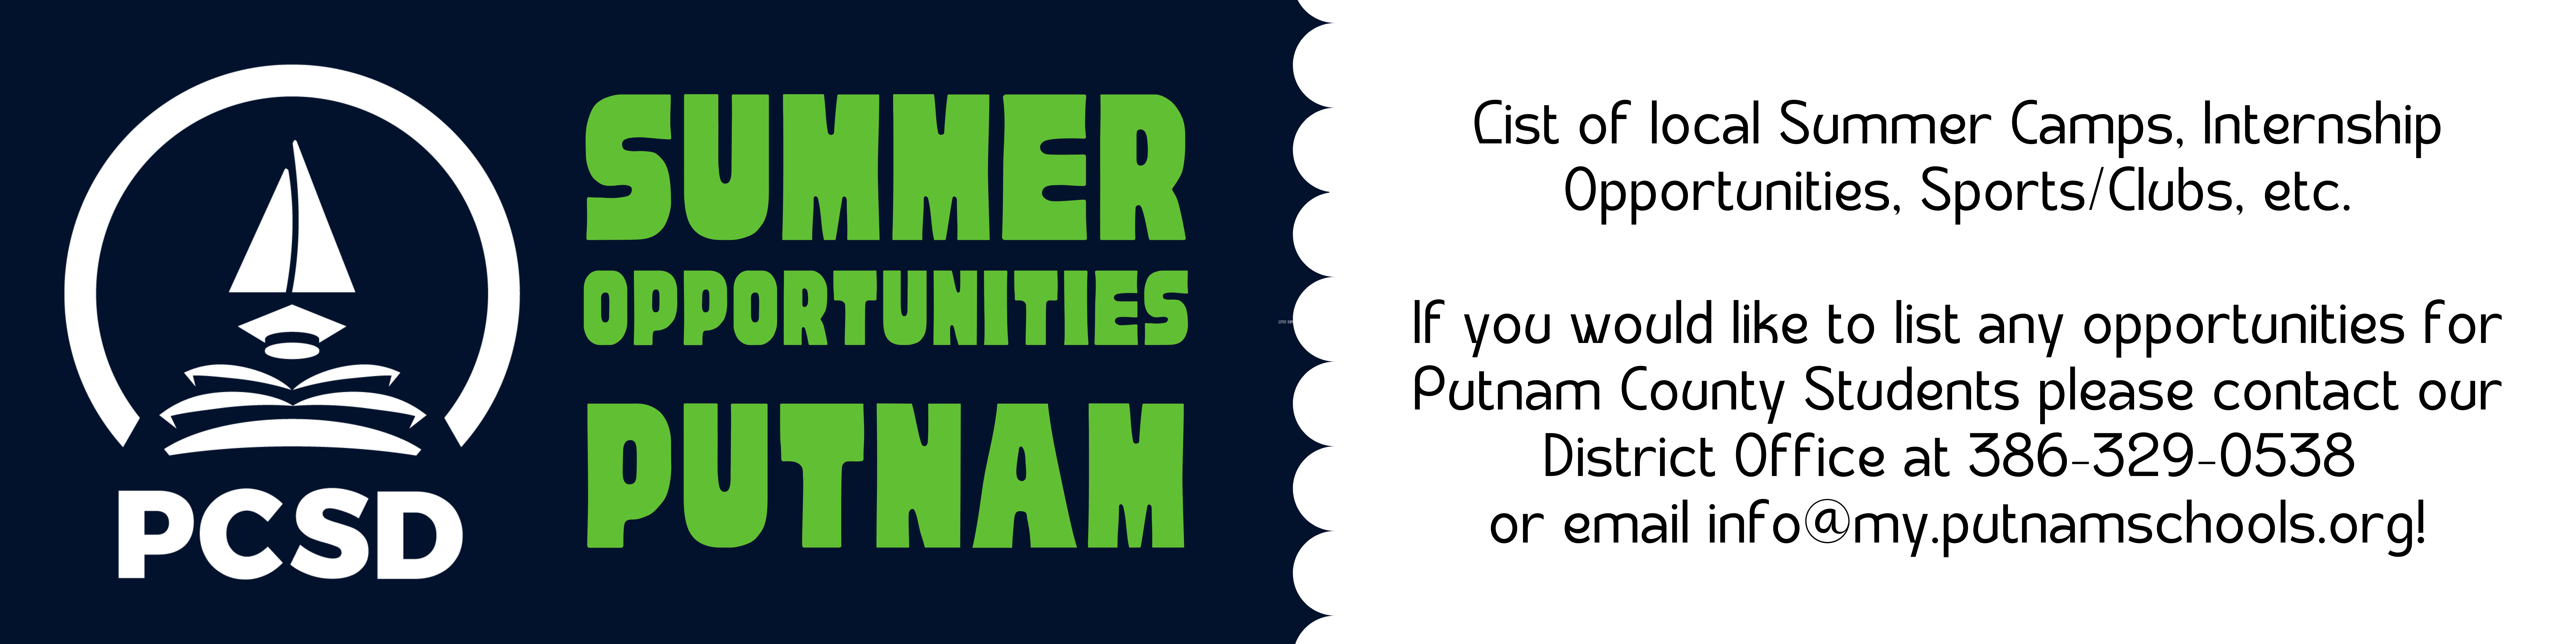 Summer Opportunities in Putnam